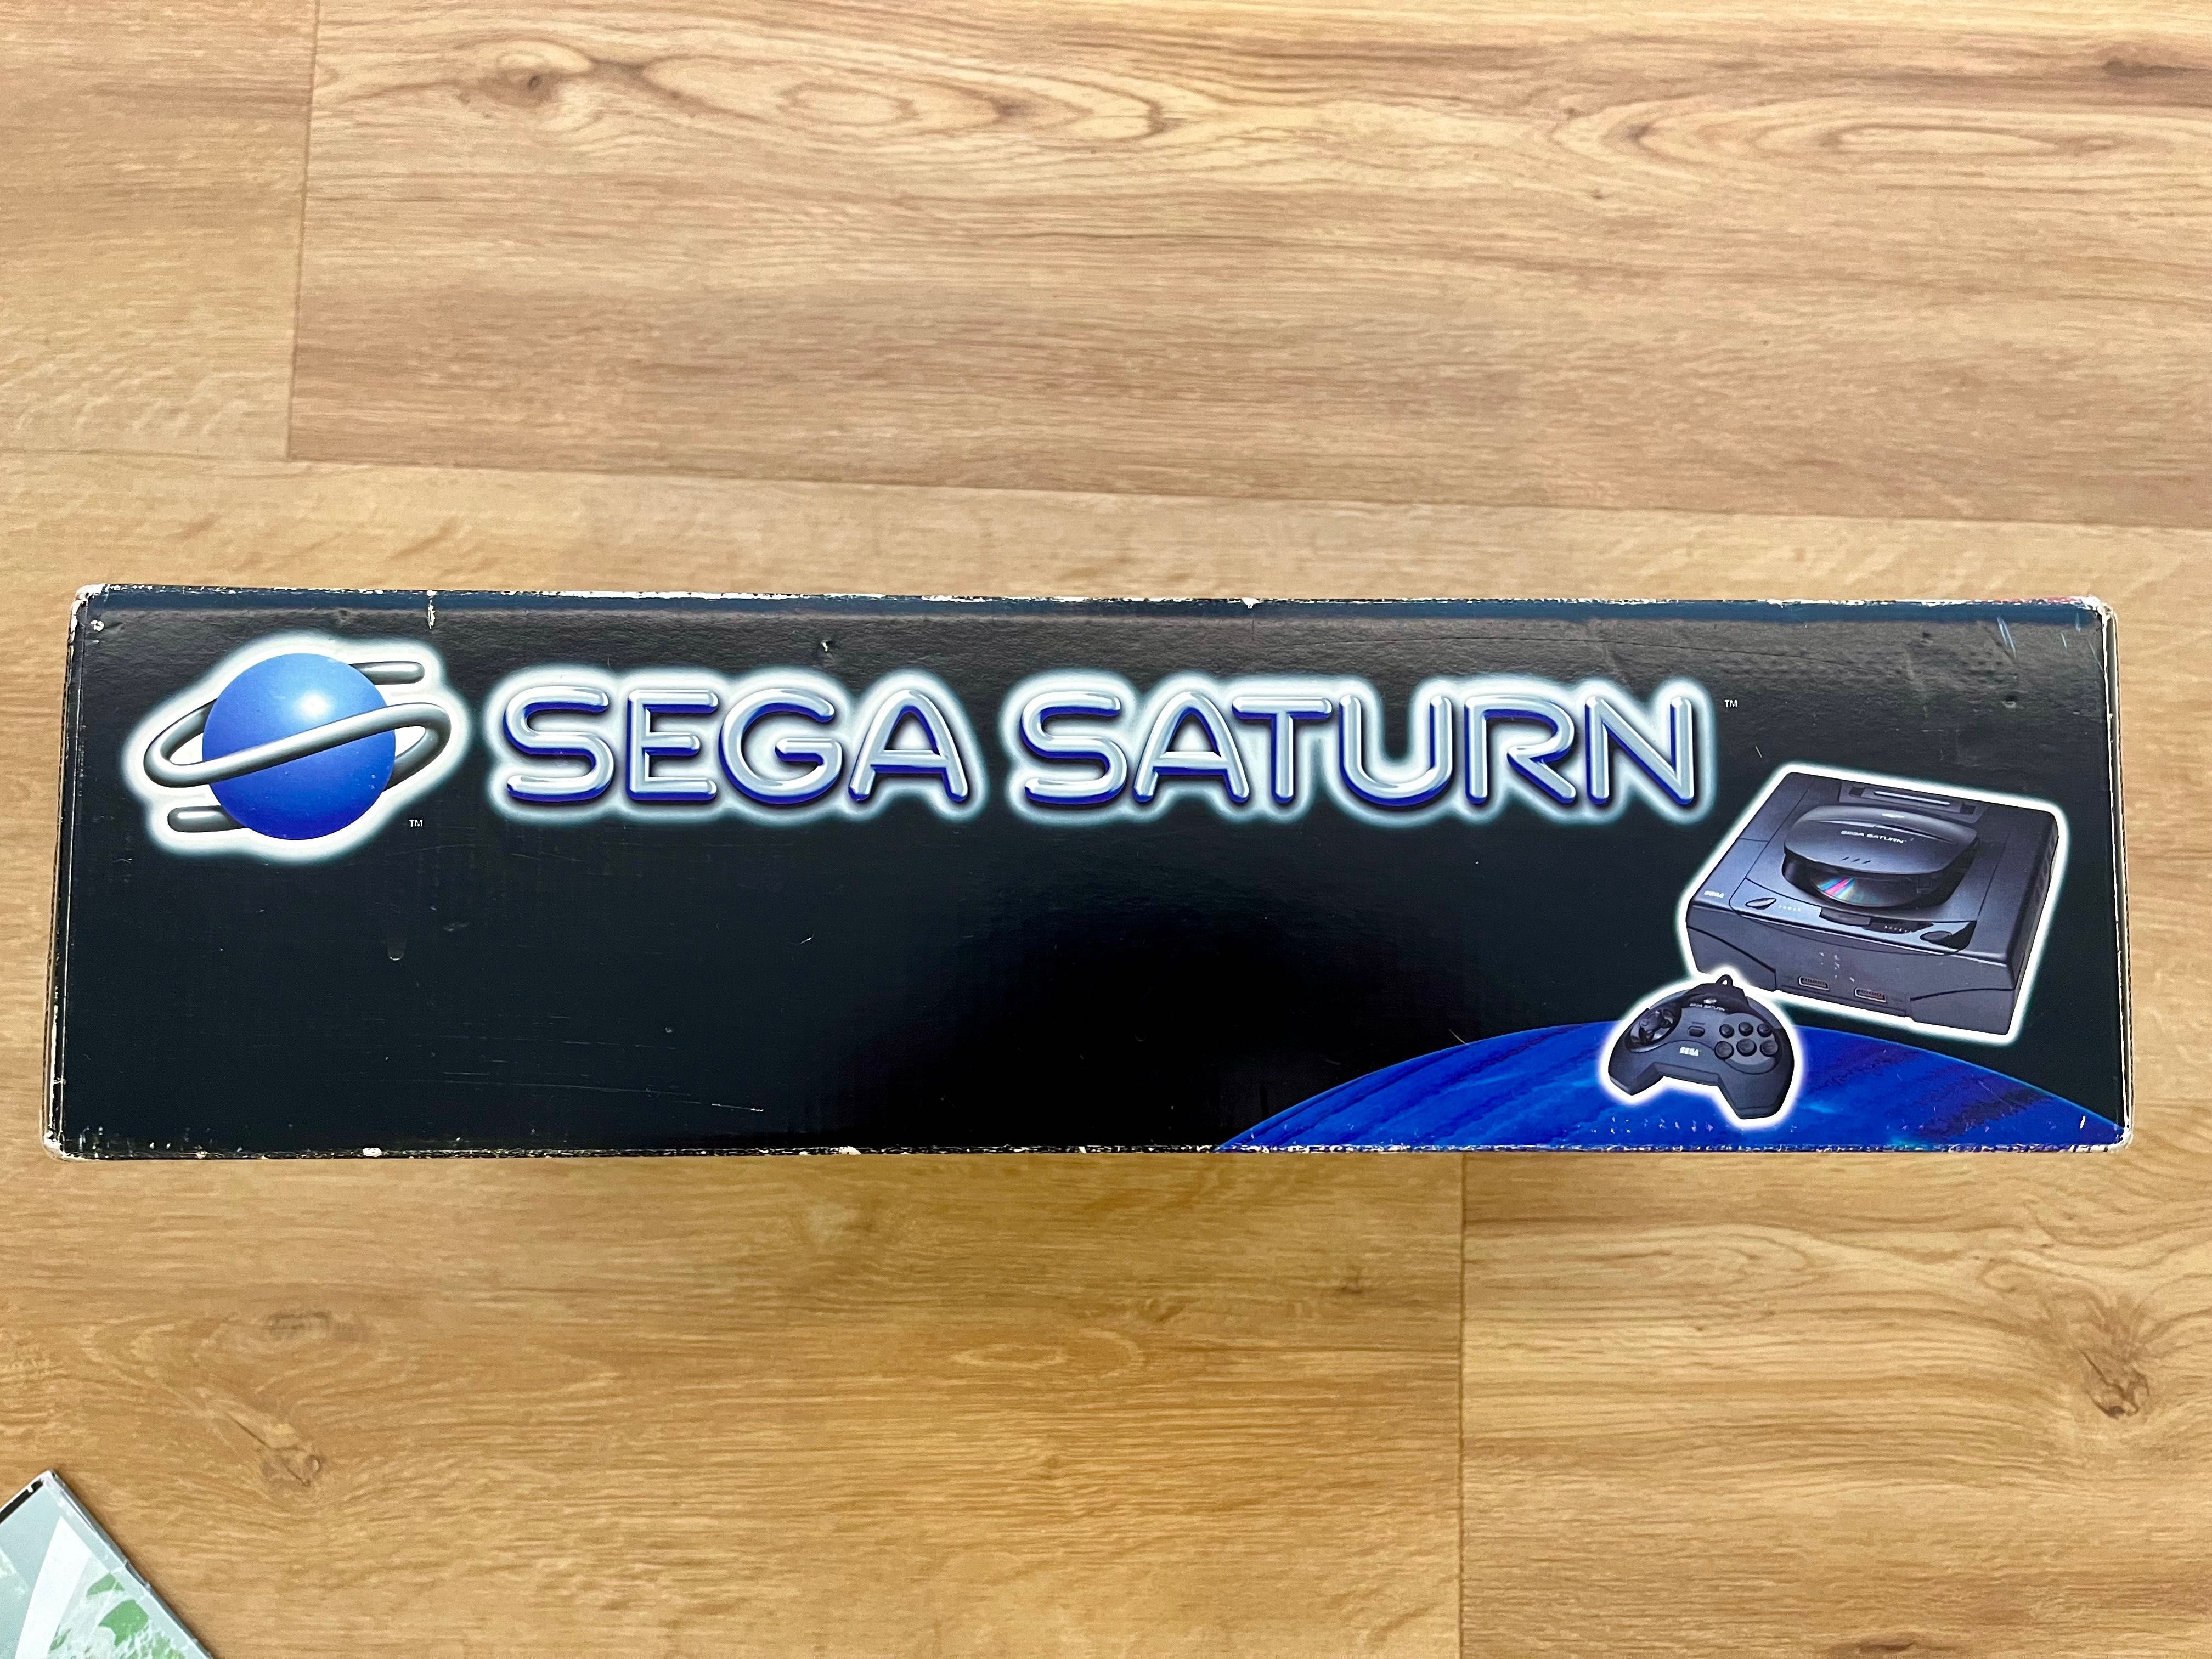 Sega Saturn - Completa na caixa